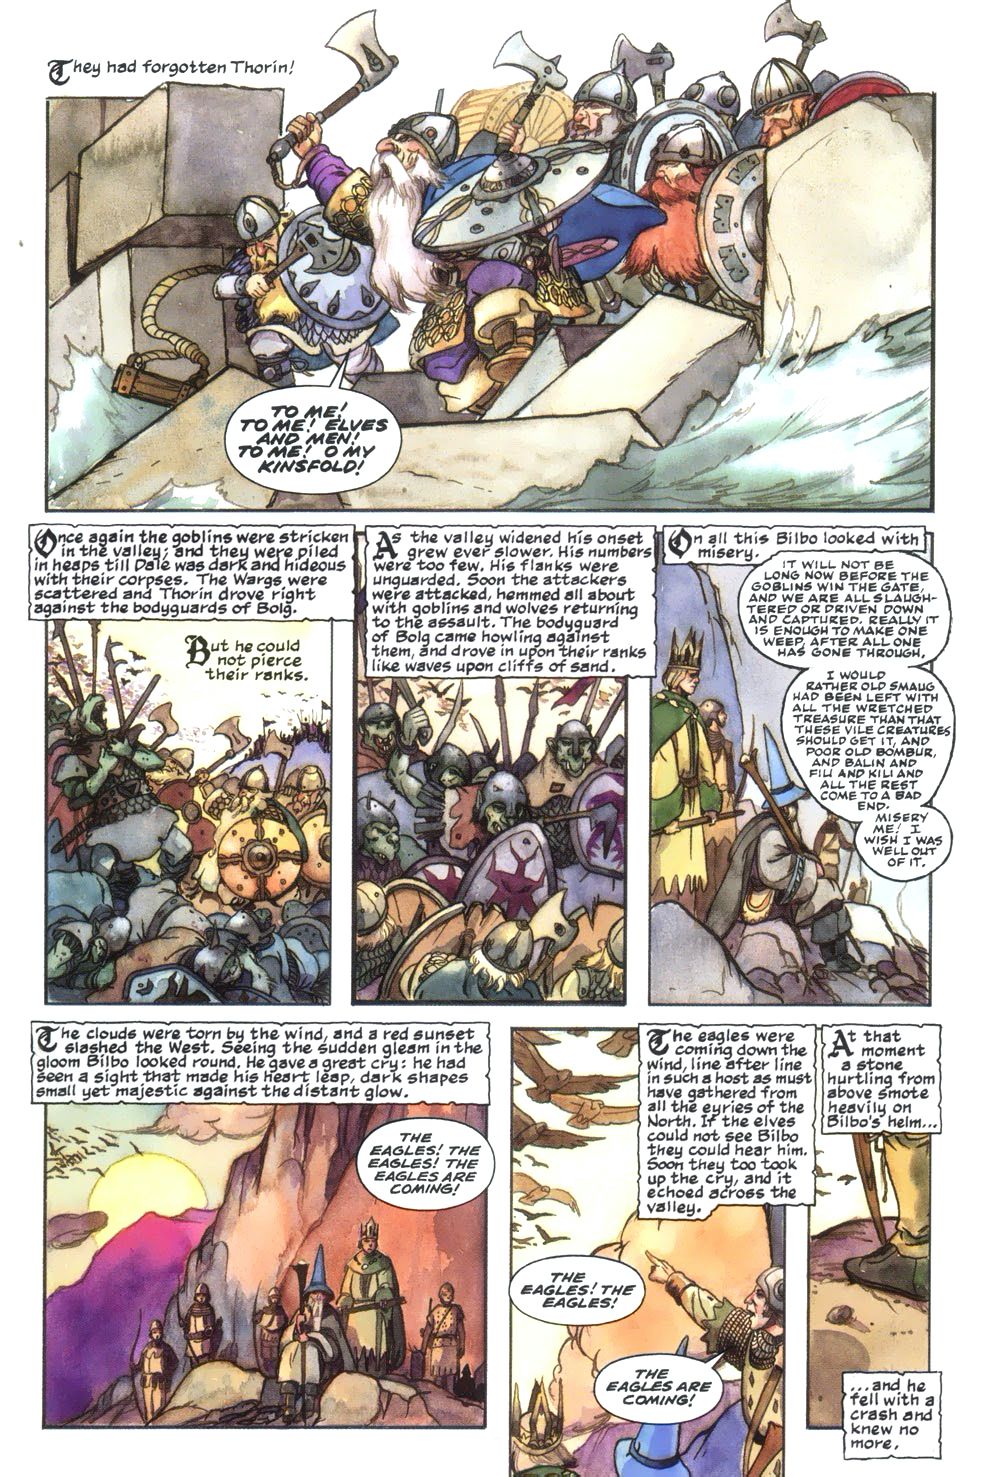 Thorin e soci si uniscono alla mischia della Battaglia dei Cinque Eserciti, combattendo fino all'arrivo delle Aquile per porre fine al conflitto in The Hobbit: An Illustrated Edition of the Fantasy Classic, Eclipse Comics (1989).